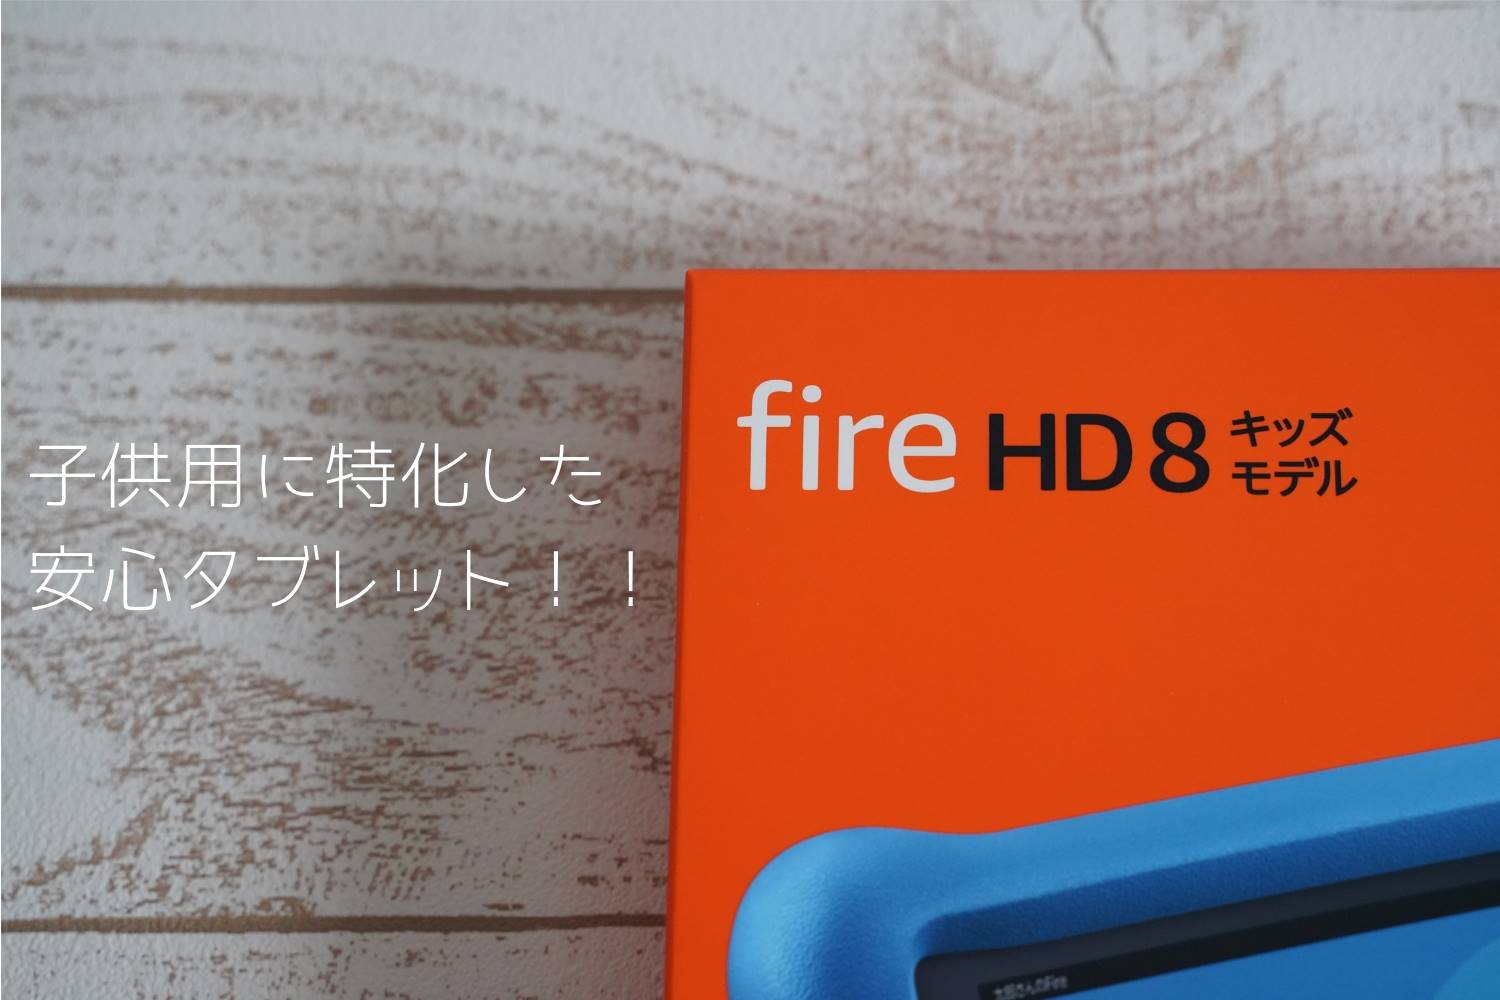 Fire HD キッズモデルを買いました！通常版HDユーザーだからわかる 